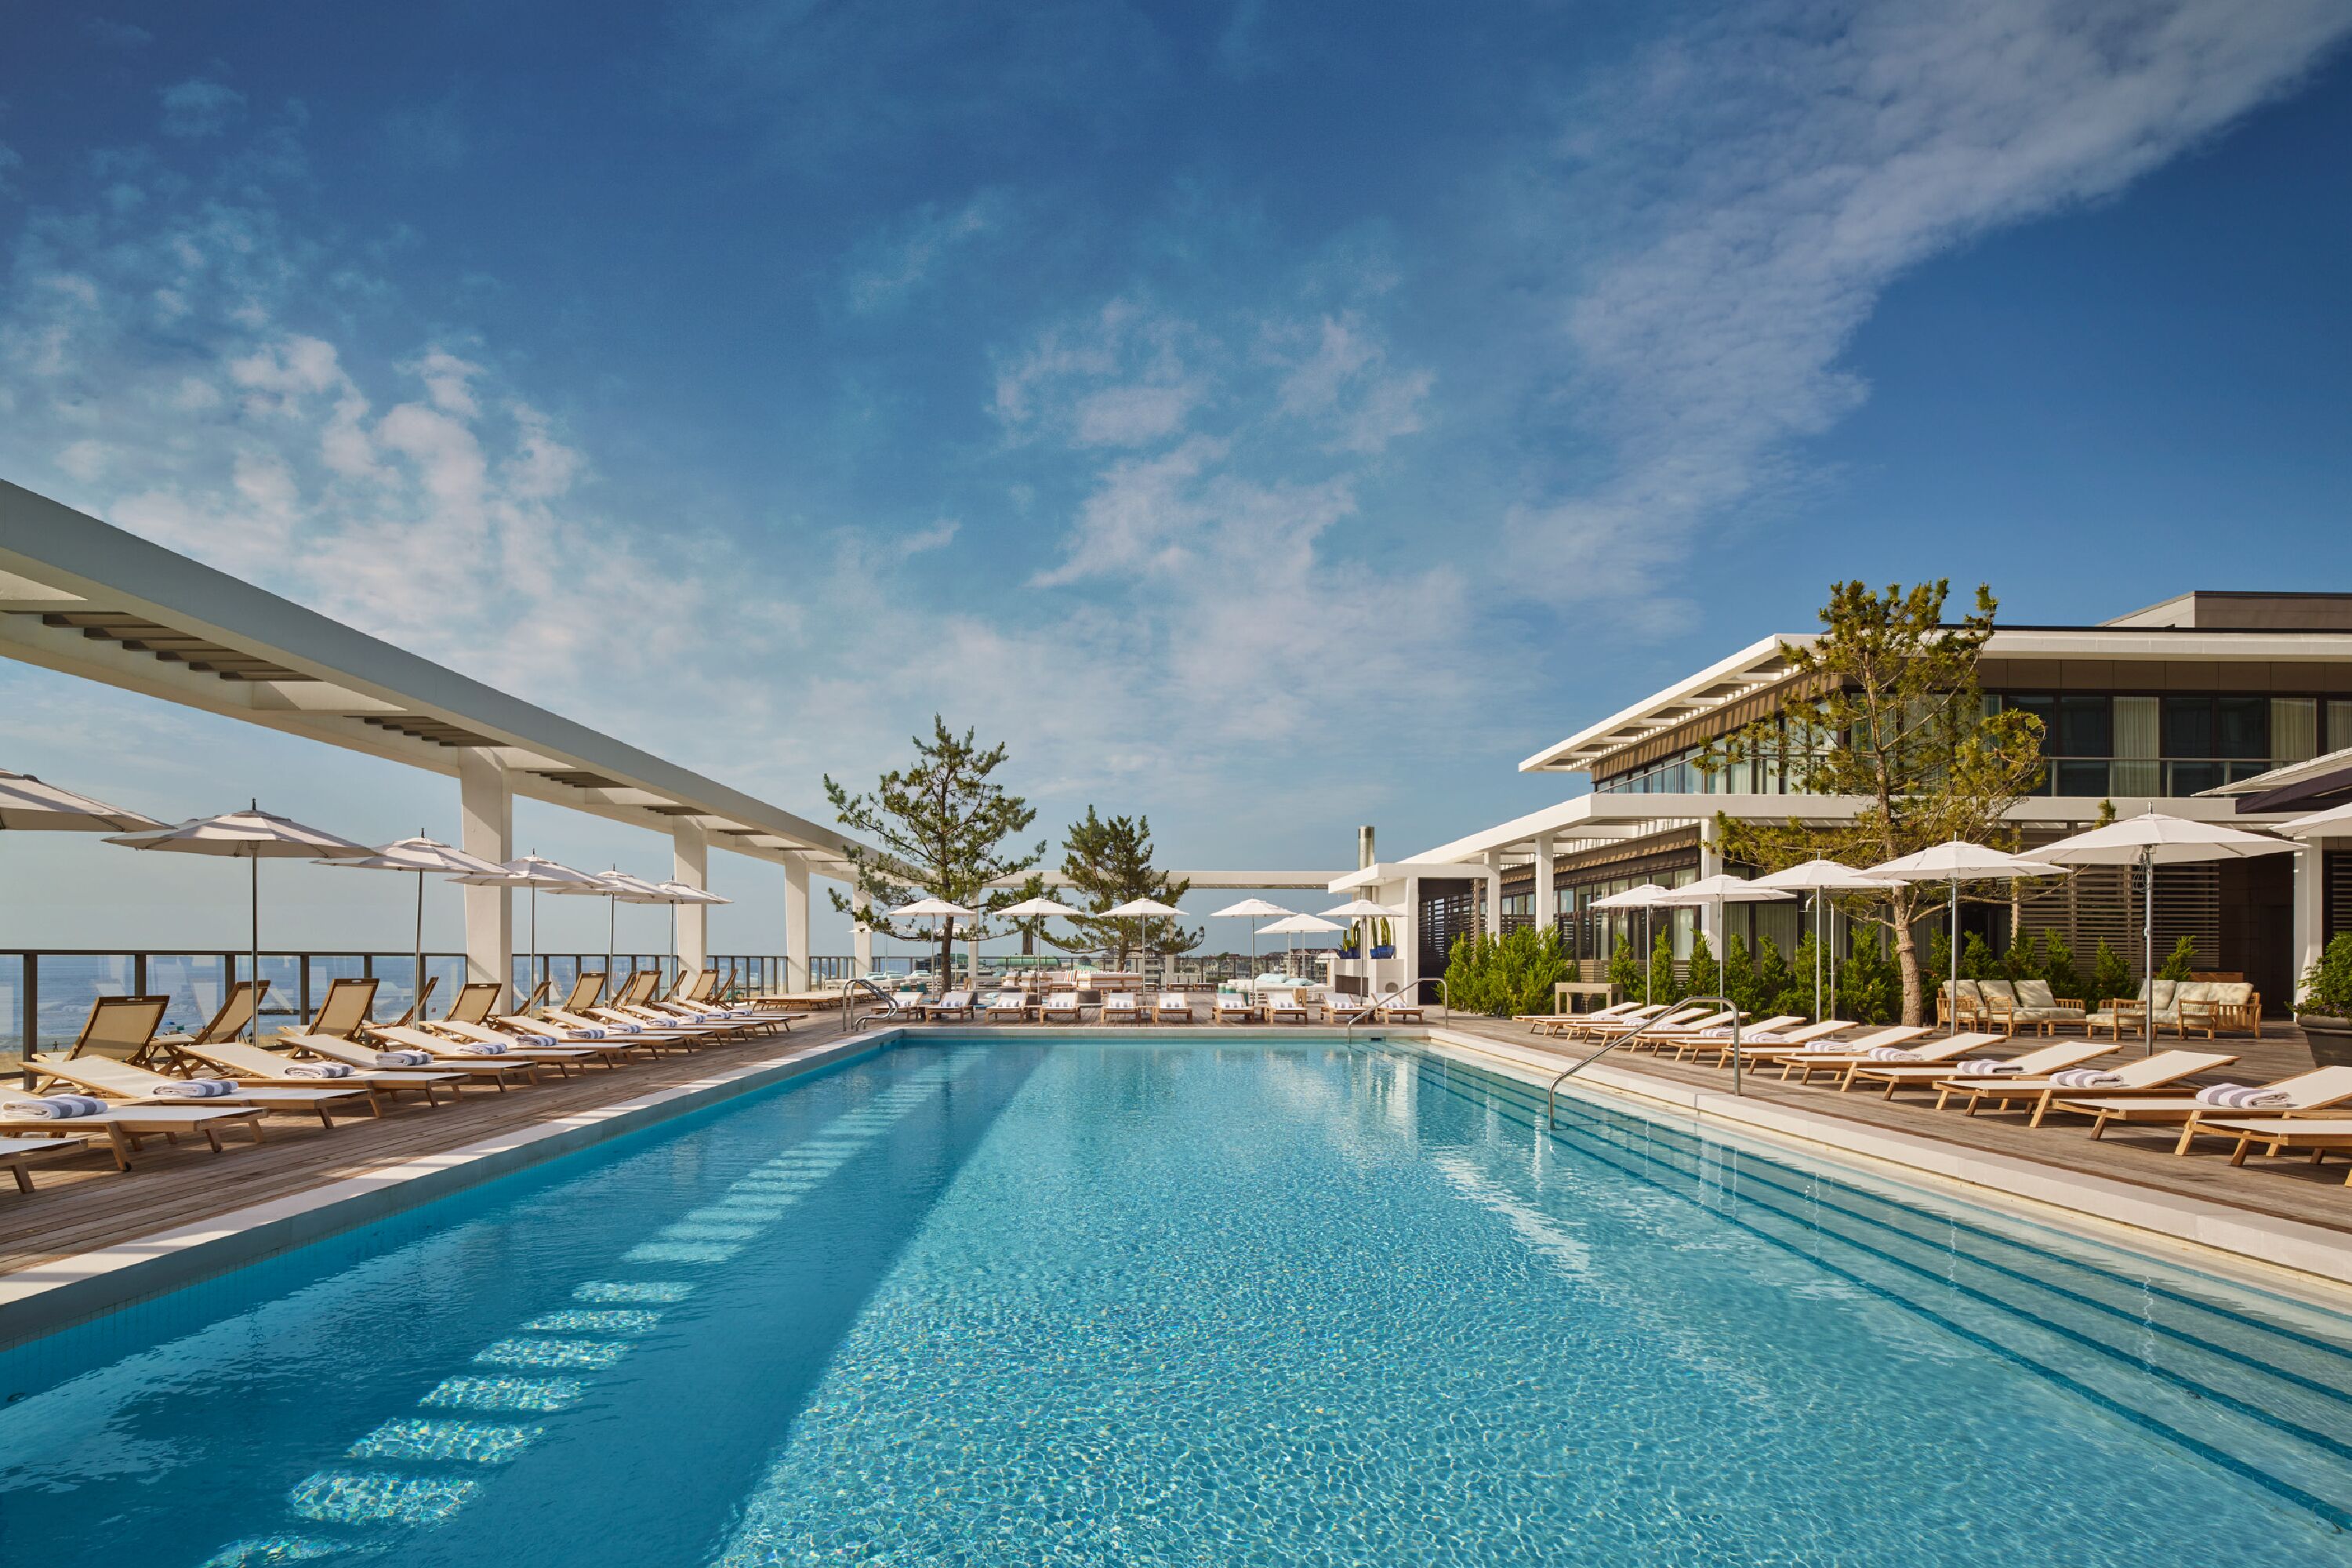 Pool view of Asbury Ocean Club Hotel